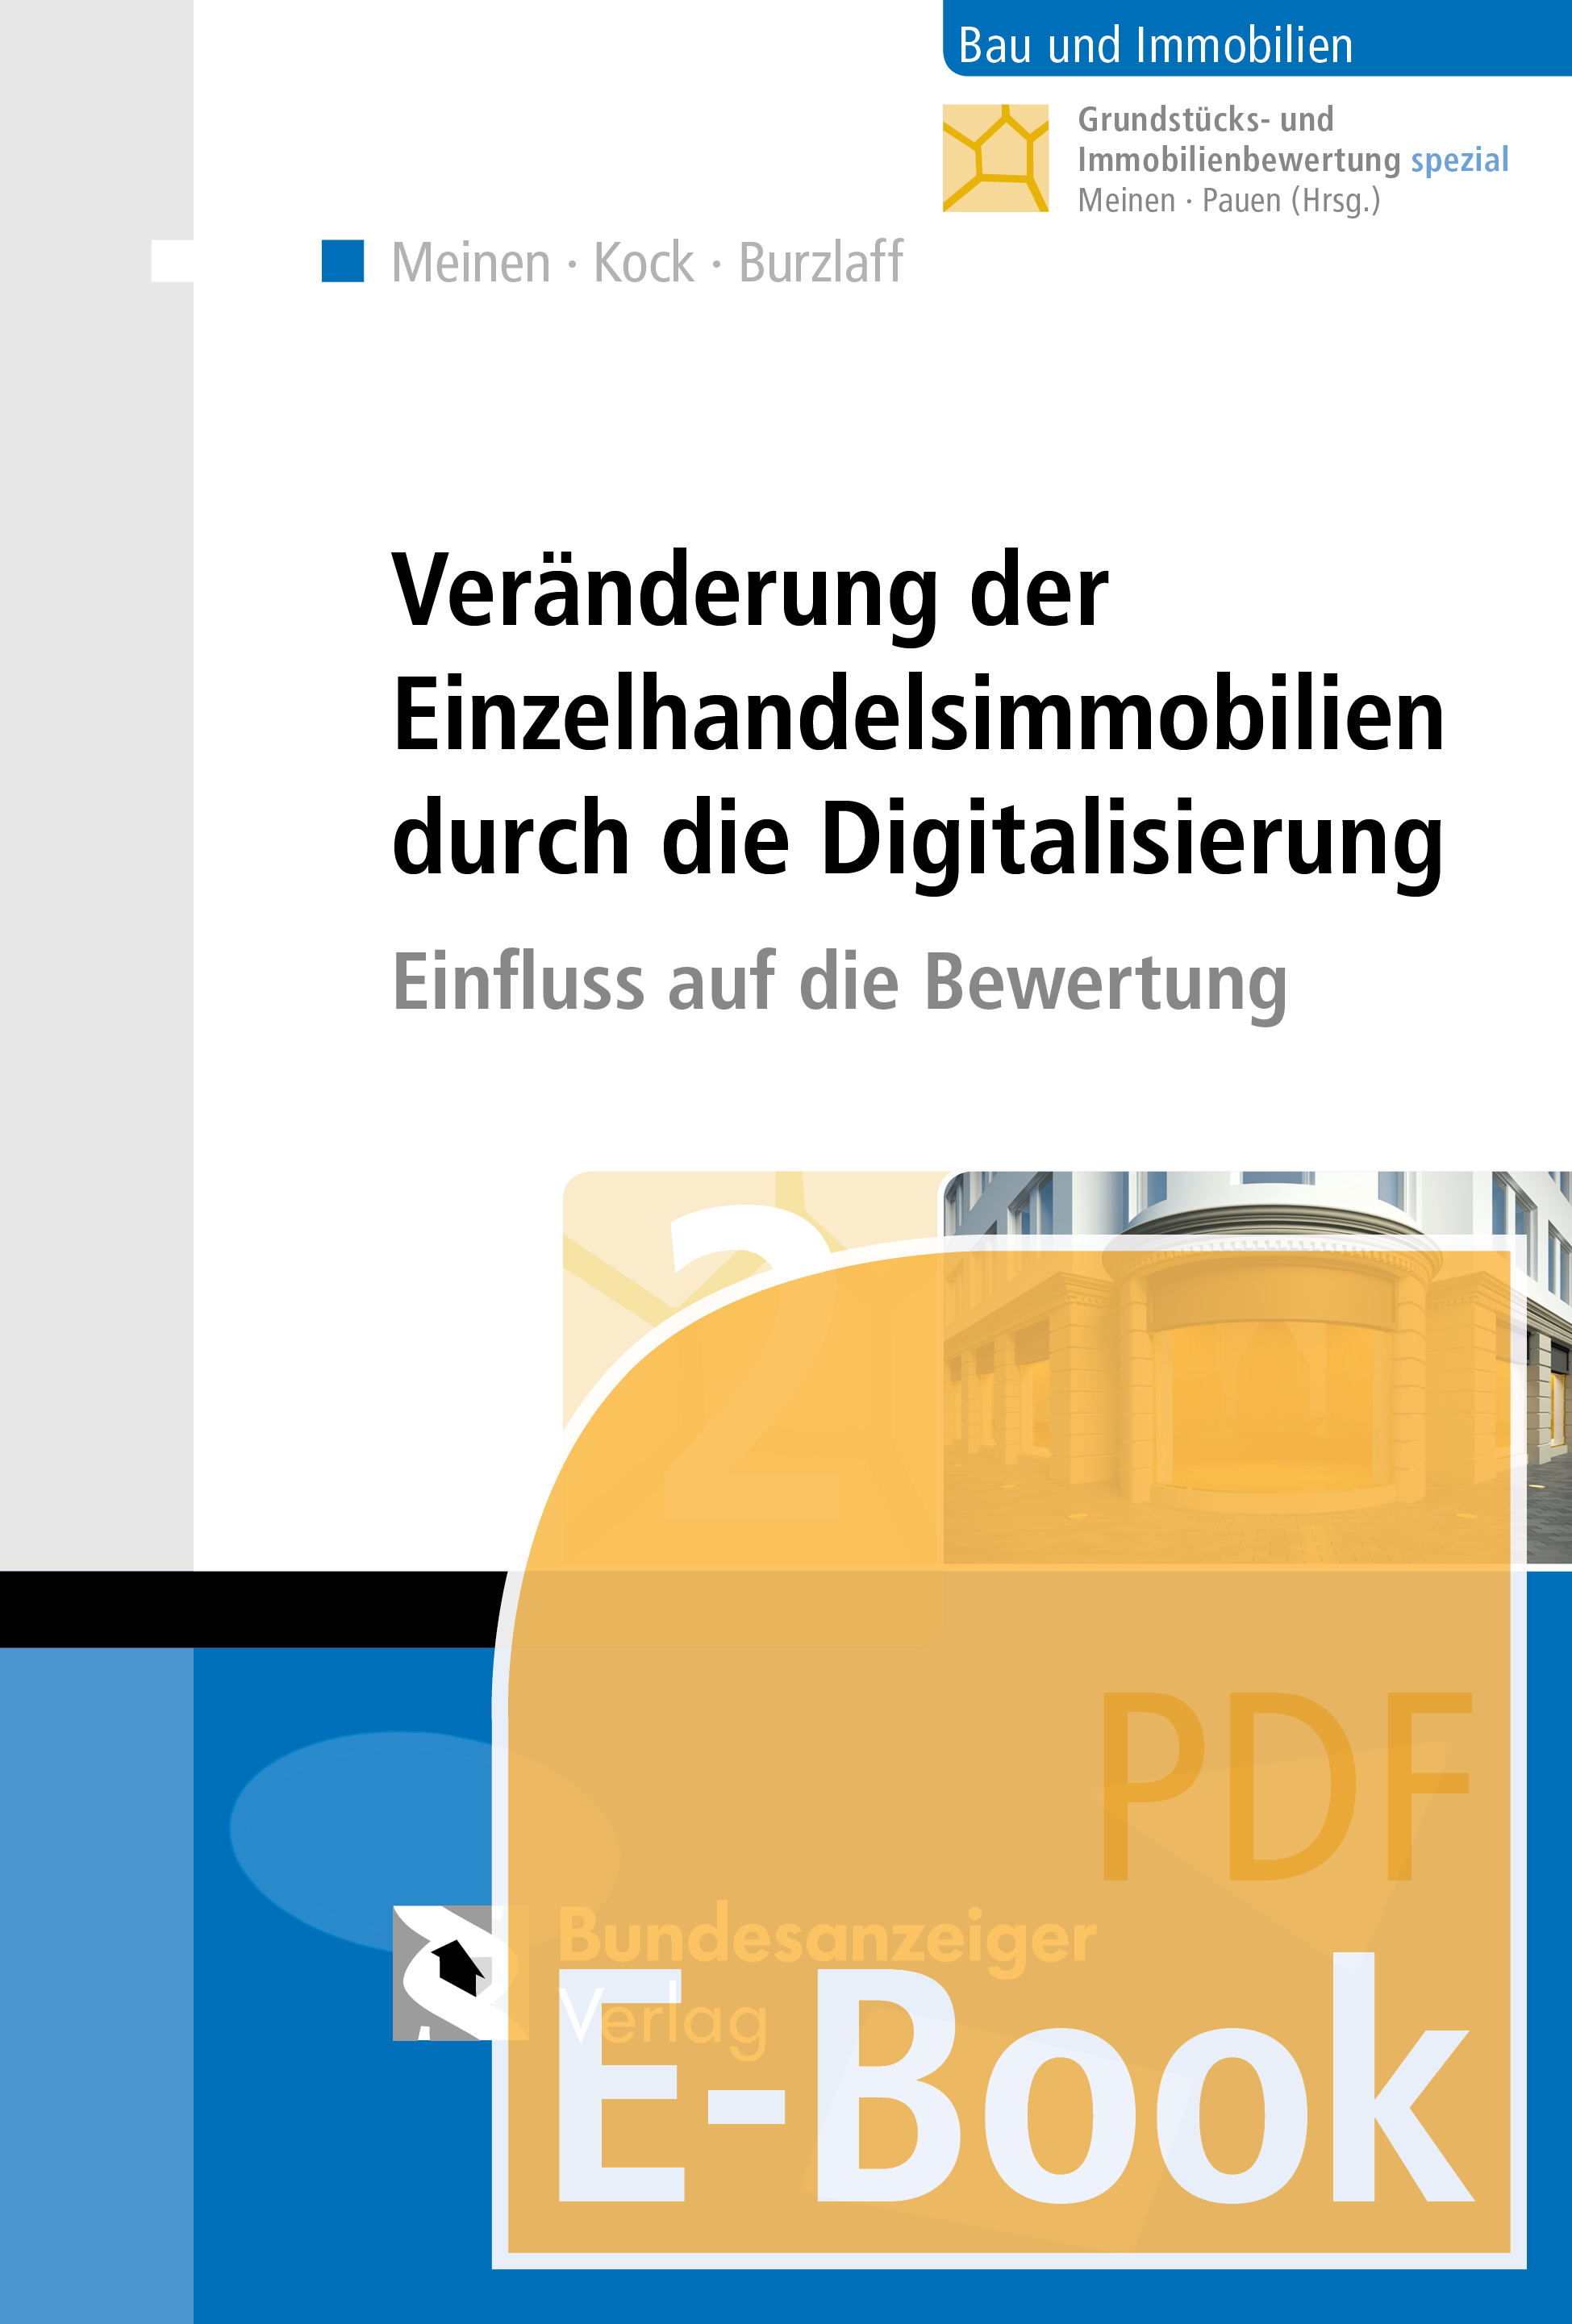 Veränderung der Einzelhandelsimmobilien durch die Digitalisierung (E-Book)